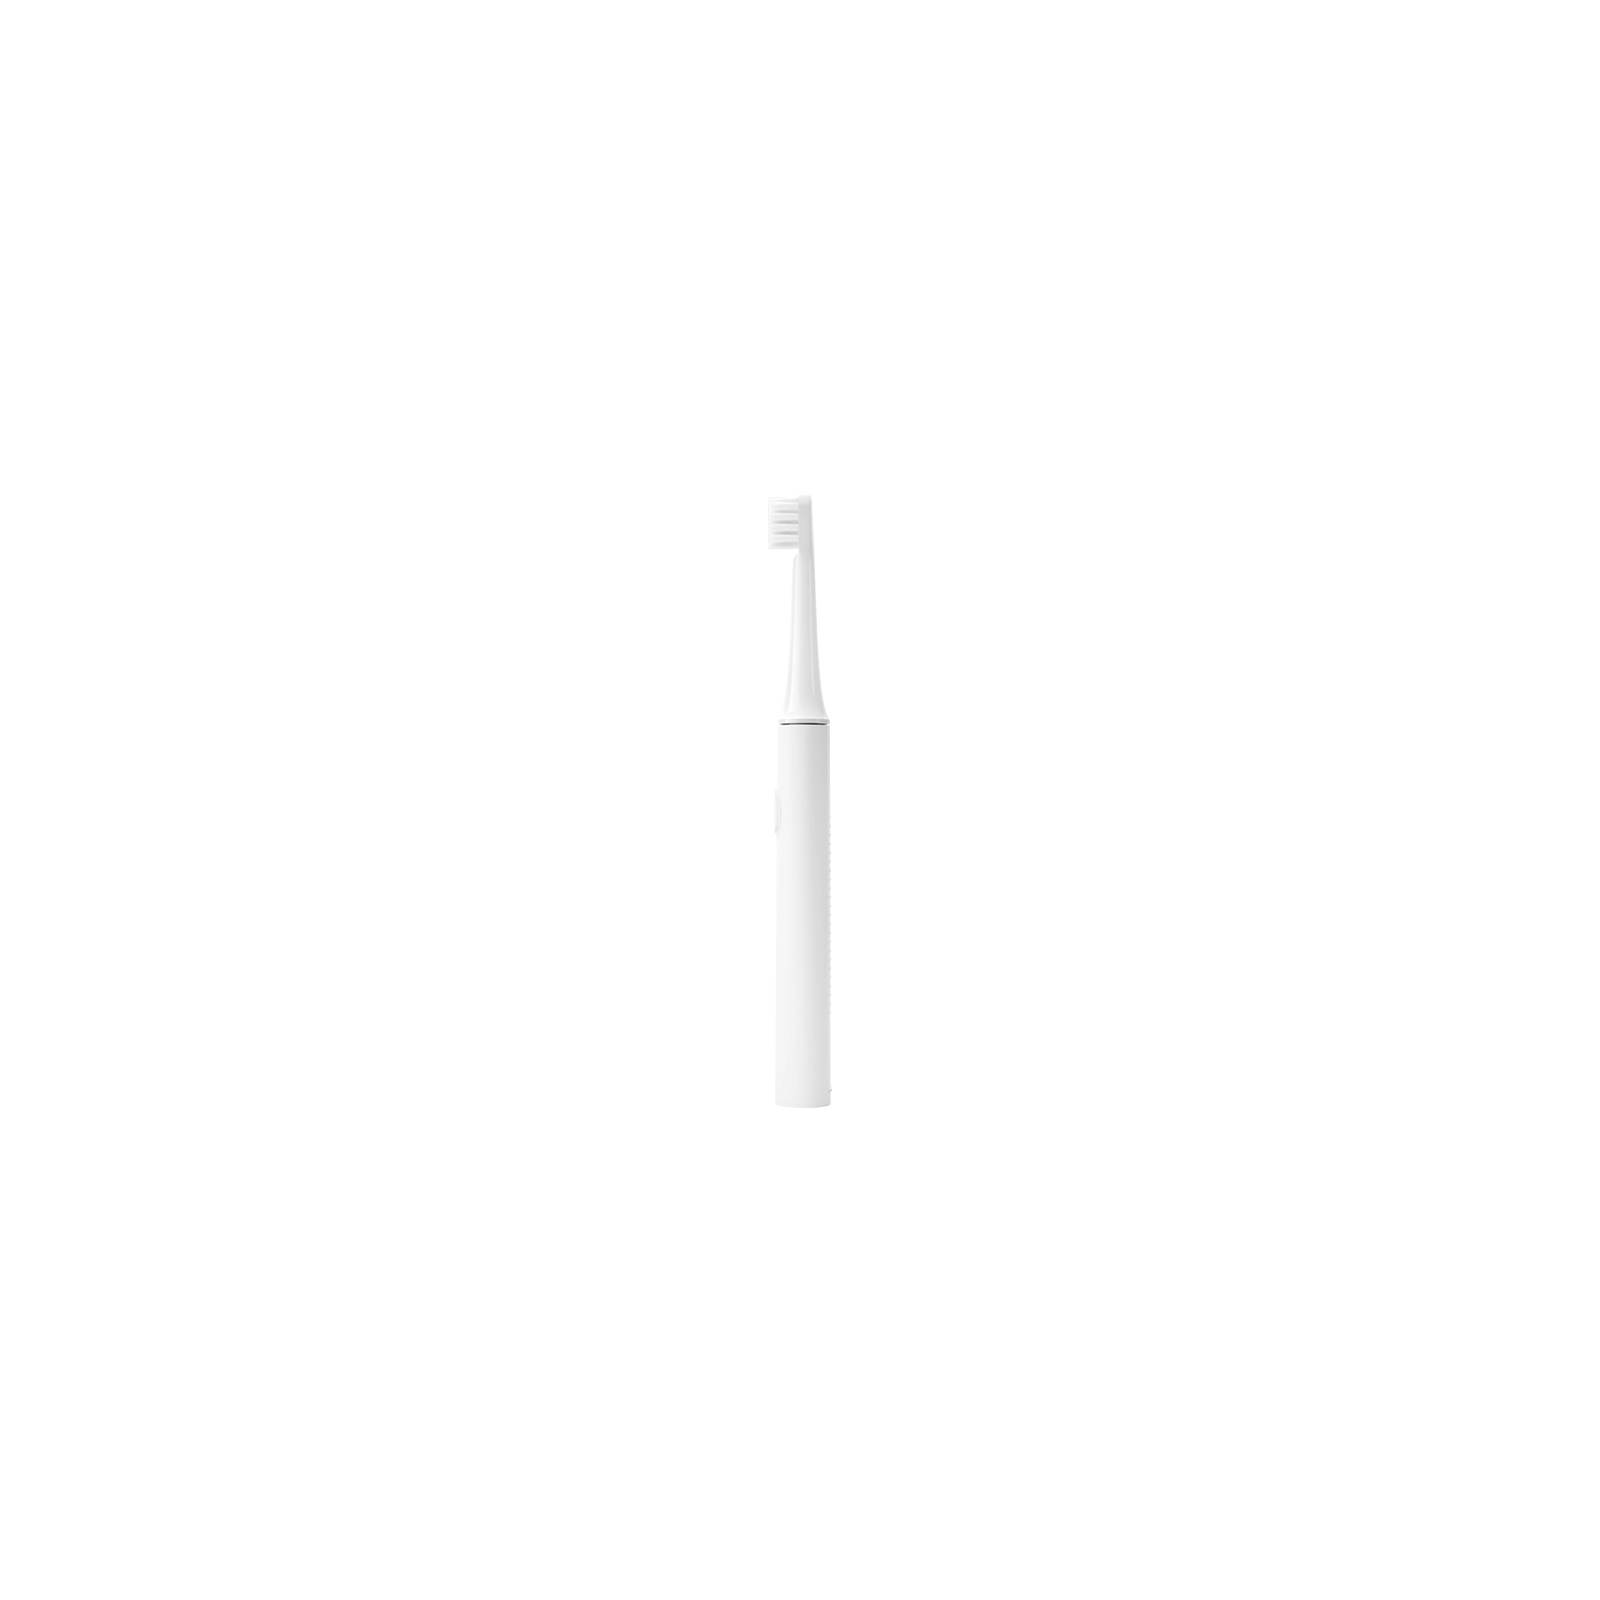 Электрическая зубная щетка Xiaomi NUN4067CN изображение 2